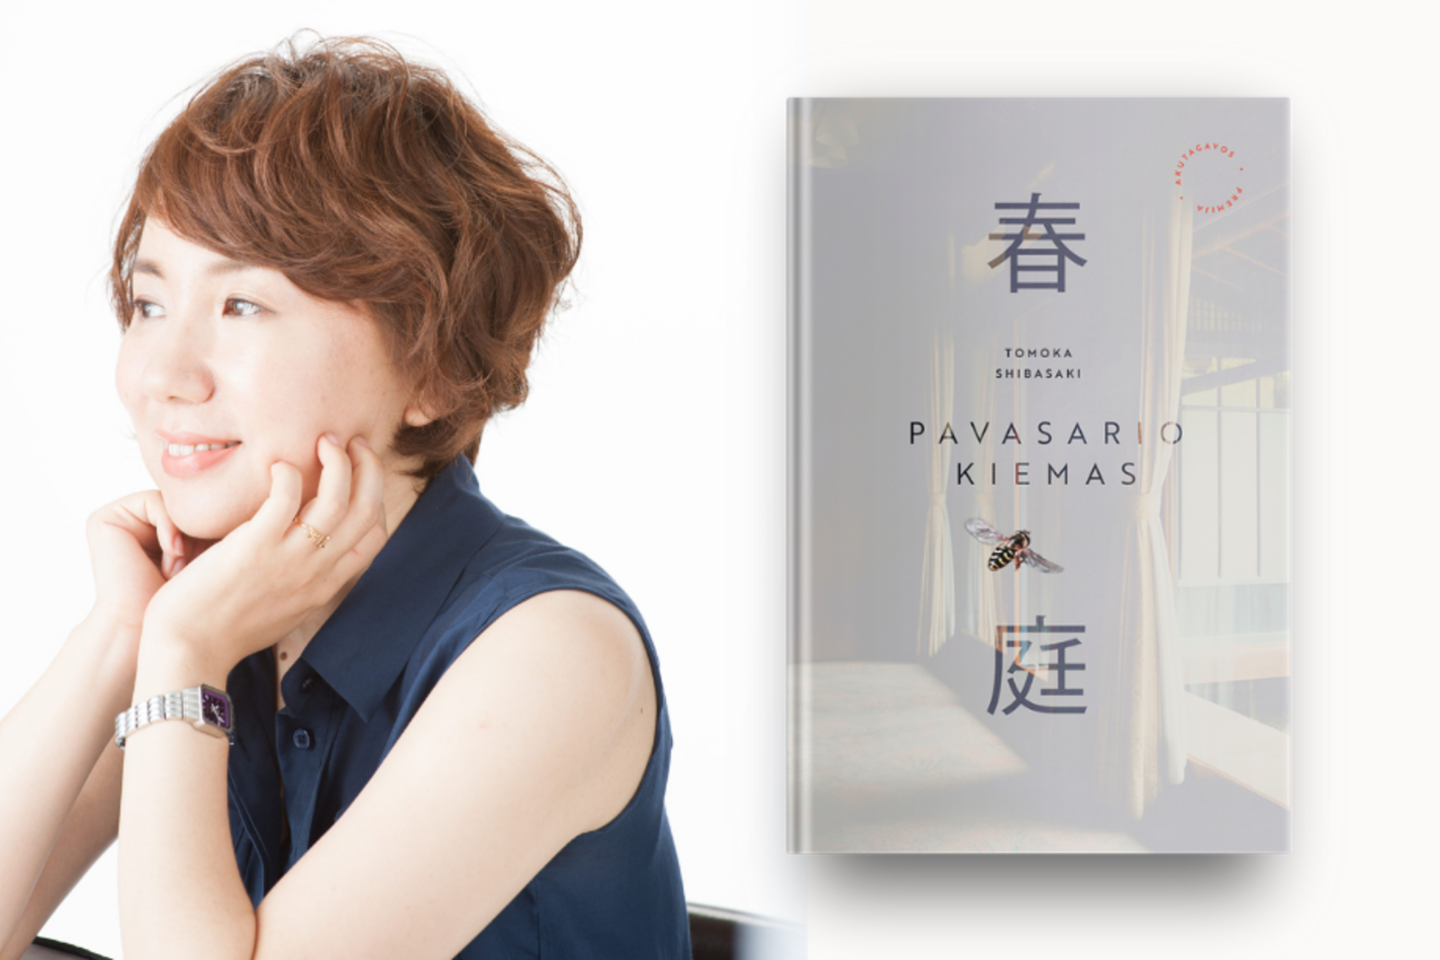 2014 m. Tomoka Shibasaki už šį subtilų romaną pelnė Akutagavos premiją.<br>Leidėjų nuotr. 